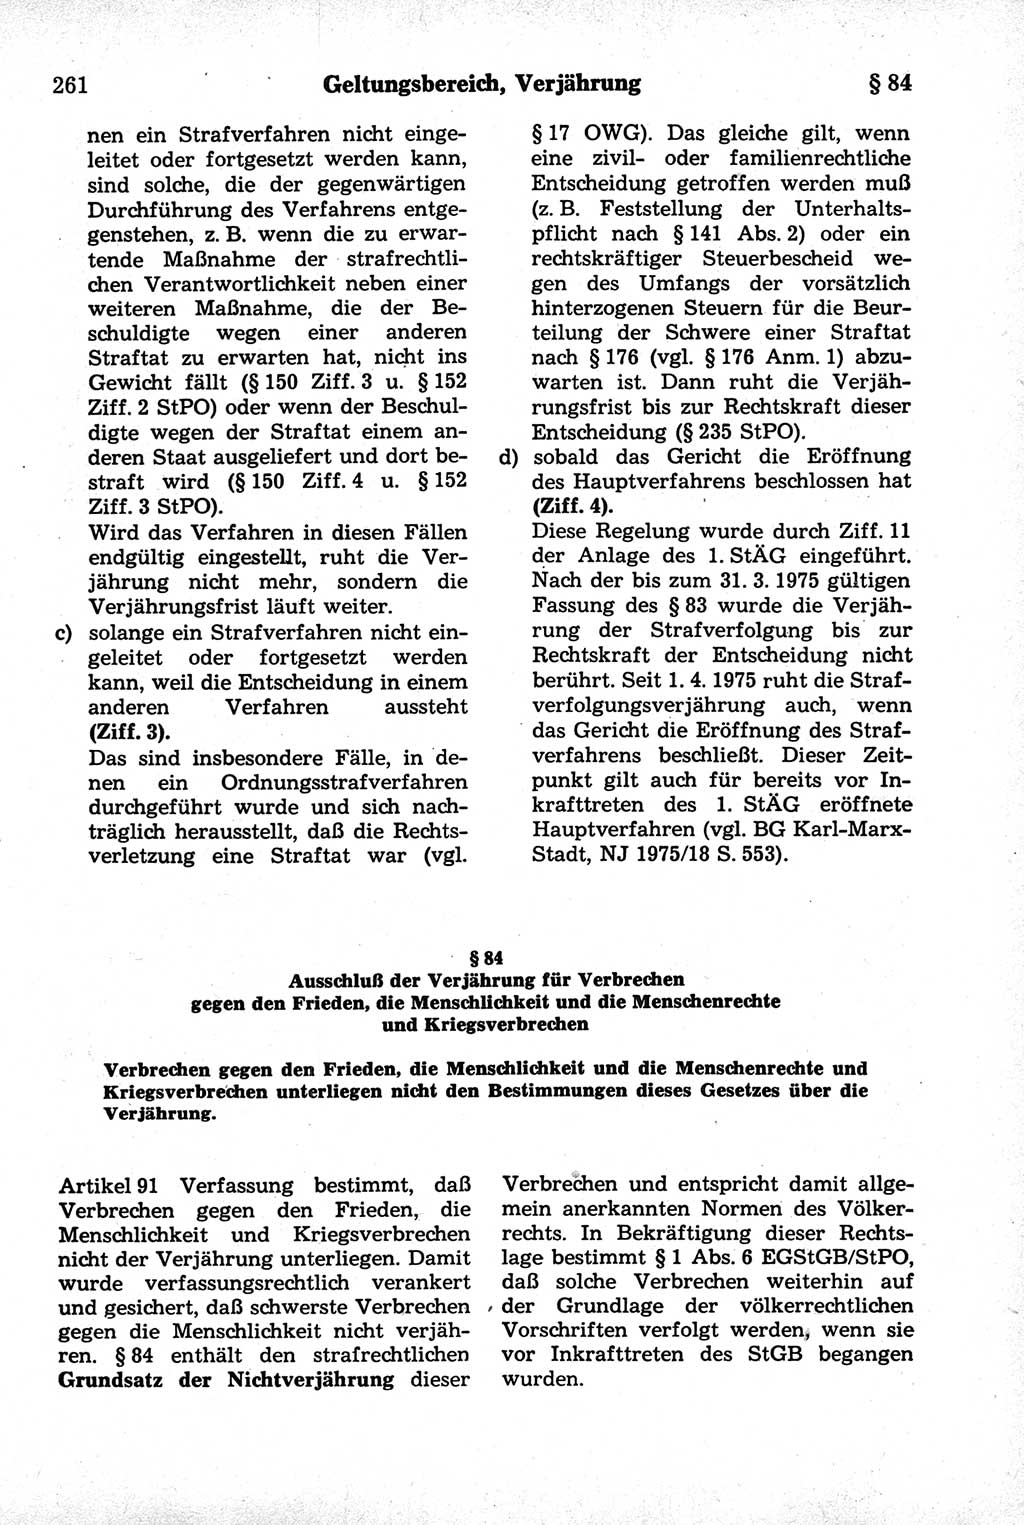 Strafrecht der Deutschen Demokratischen Republik (DDR), Kommentar zum Strafgesetzbuch (StGB) 1981, Seite 261 (Strafr. DDR Komm. StGB 1981, S. 261)